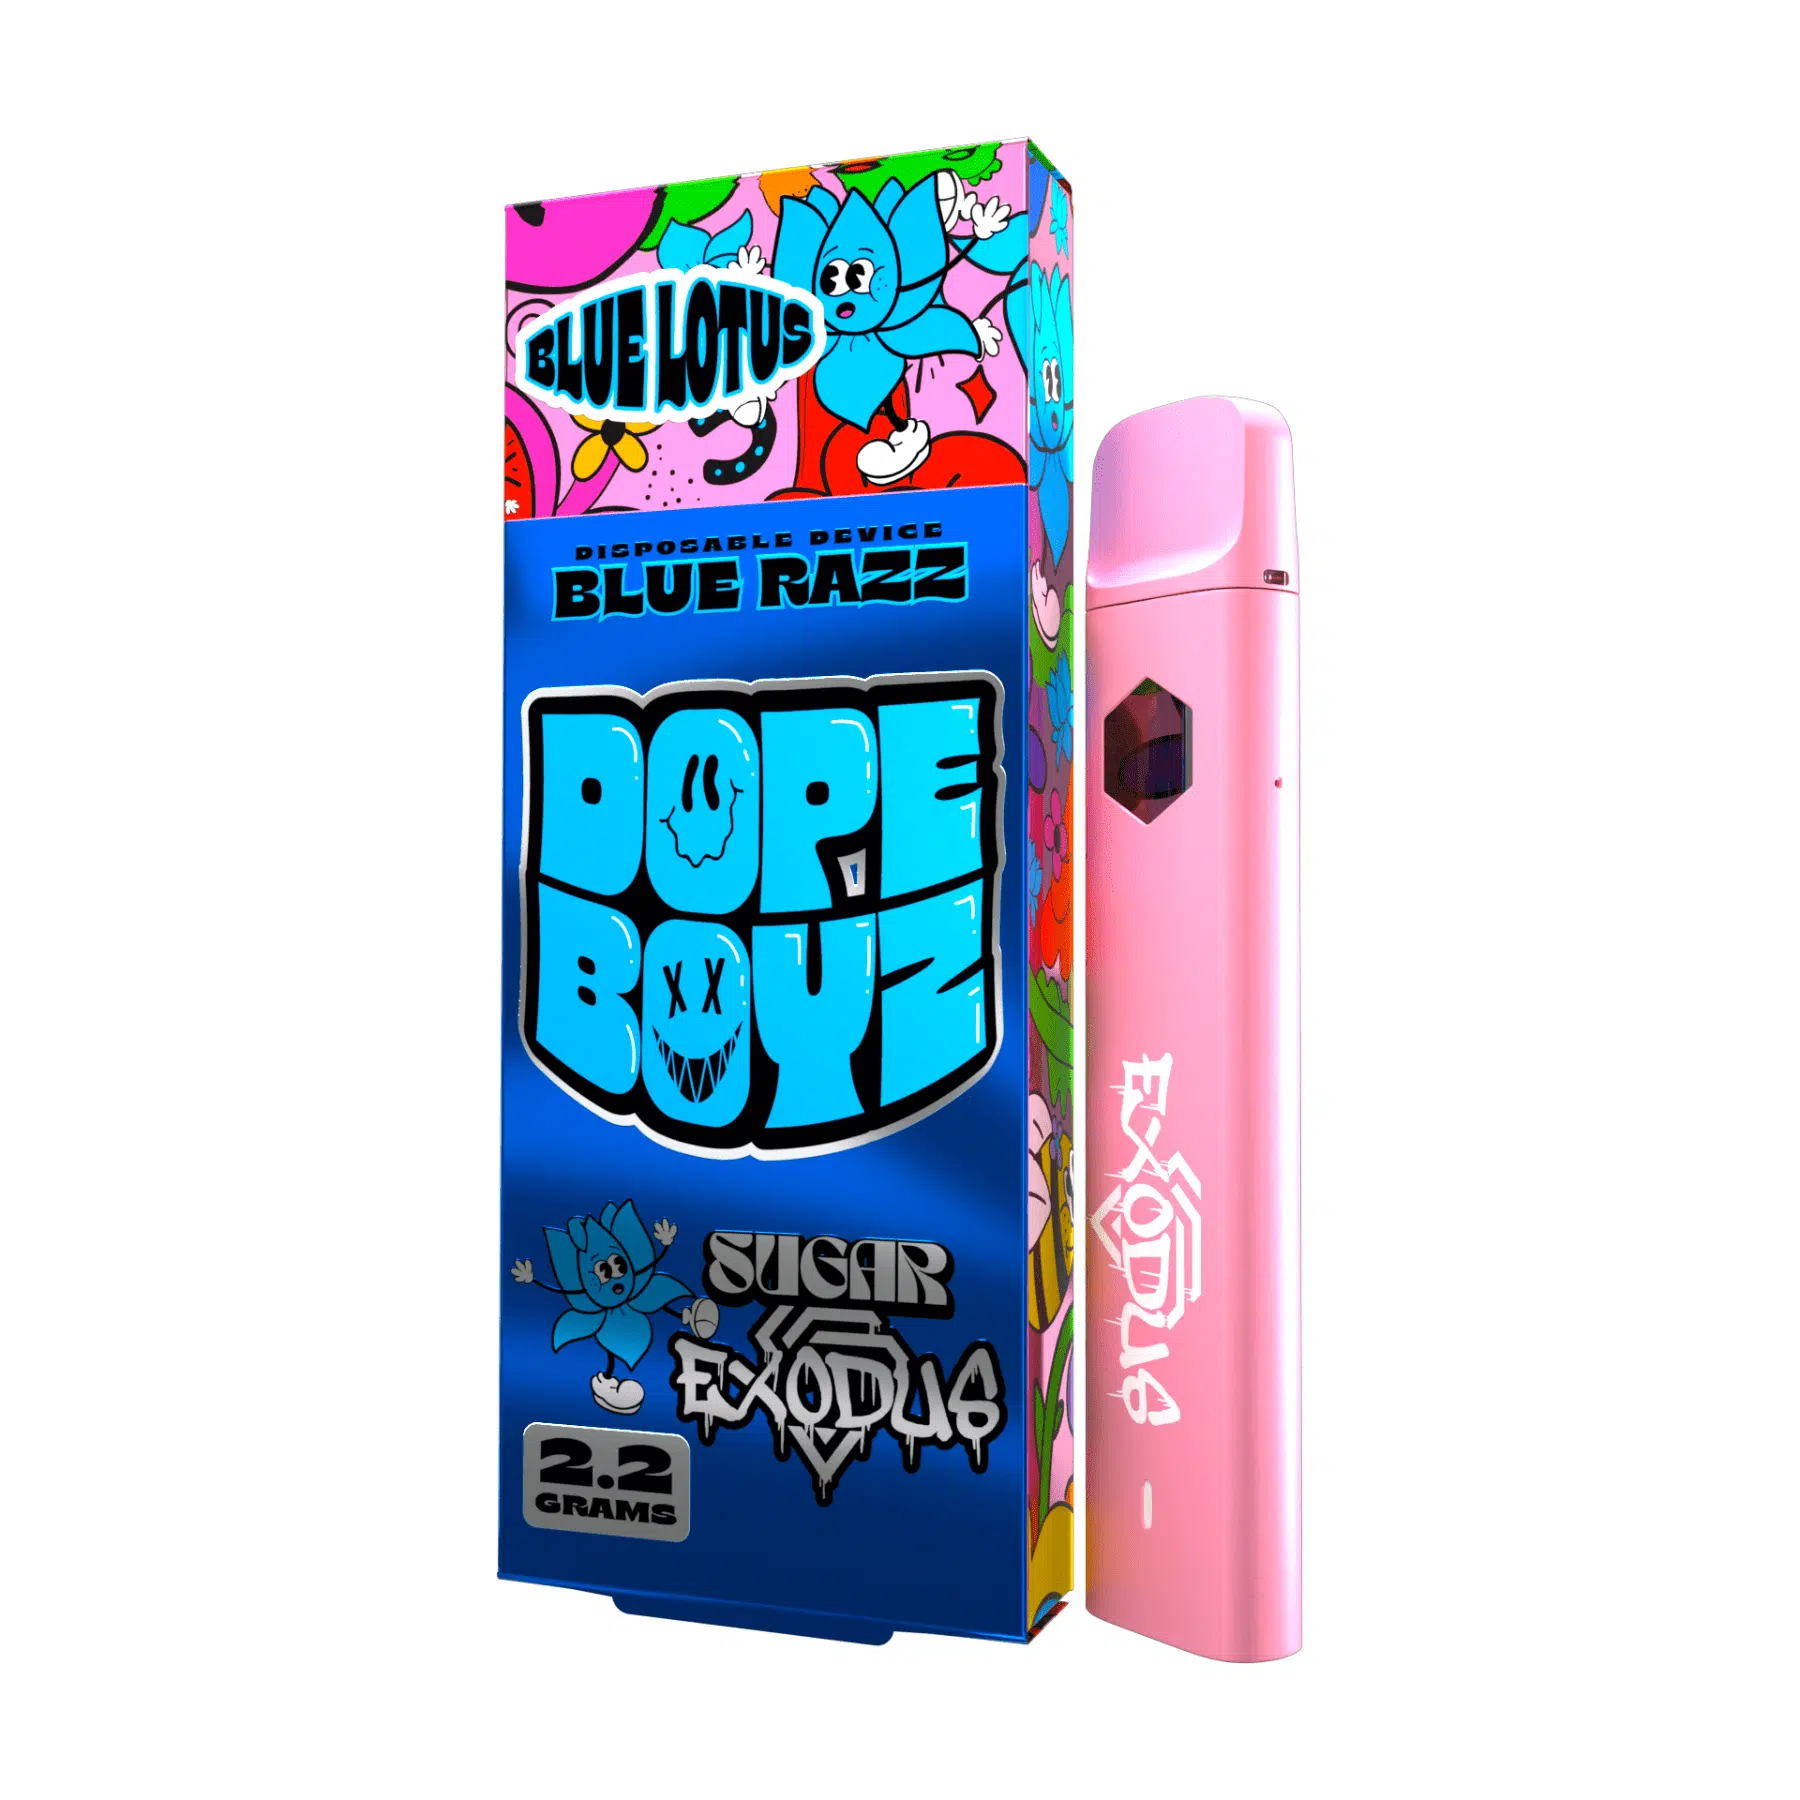 A pink box with a sugar exodus dope boyz blue lotus disposables (2. 2g) e-liquid.